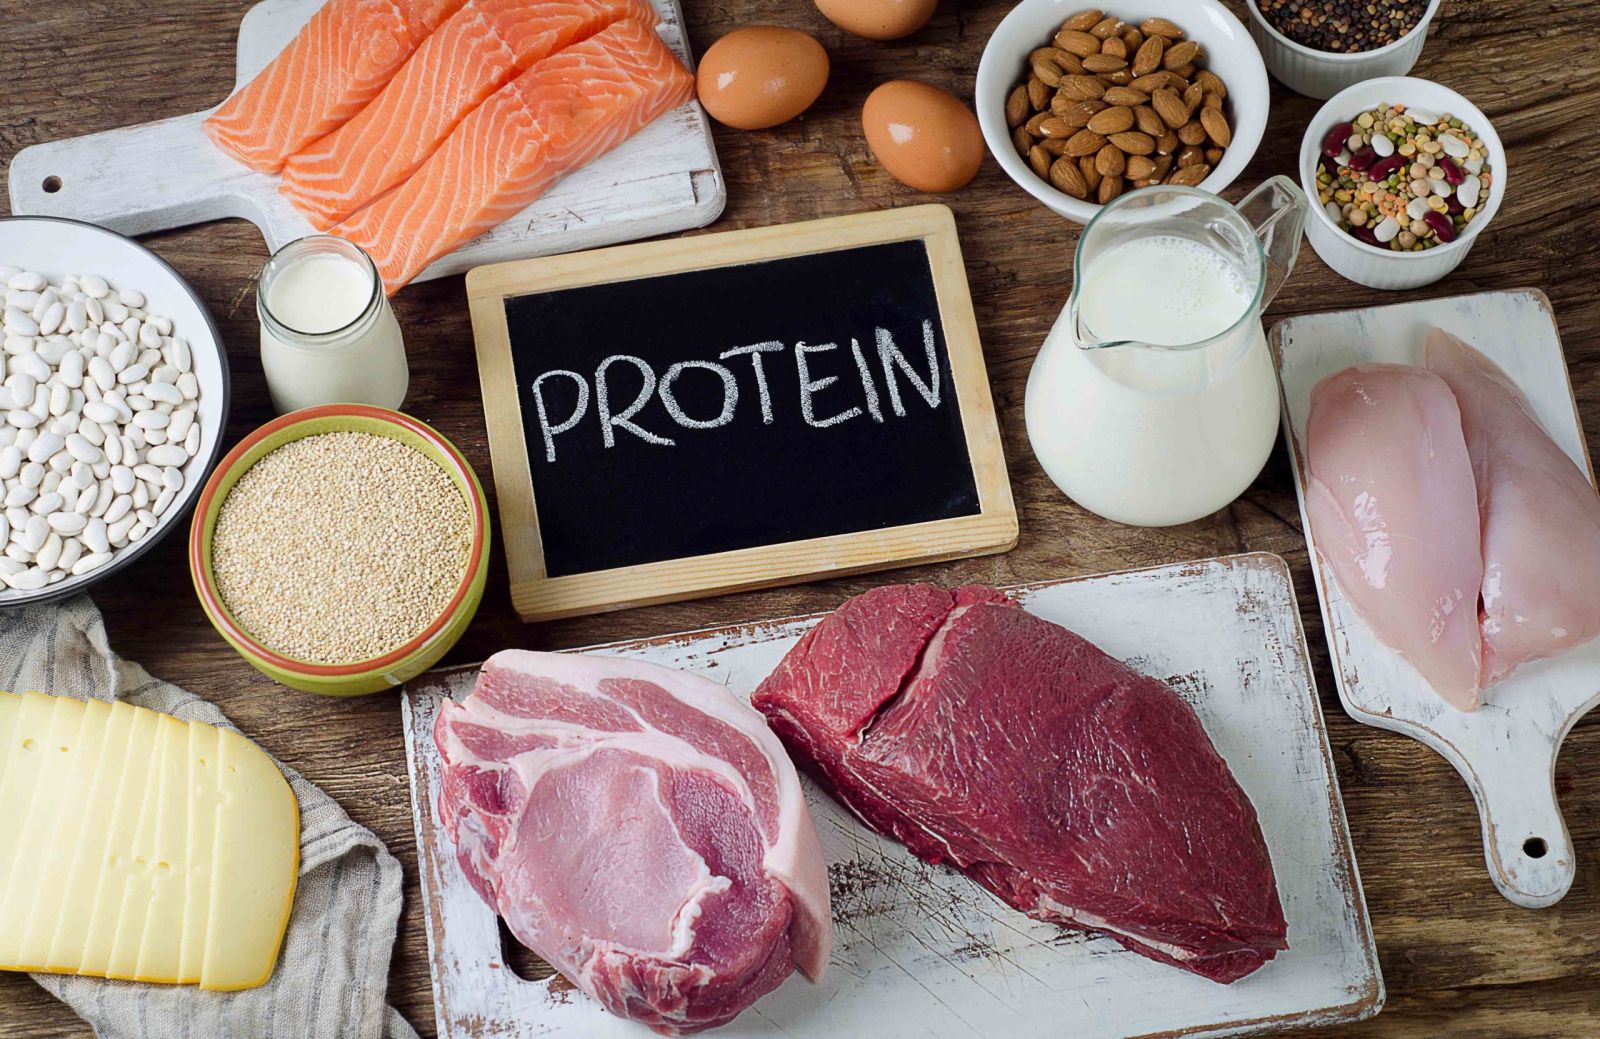 Theo chuyên gia, trong tiết lợi có chứa nhiều protein và các dưỡng chất khác